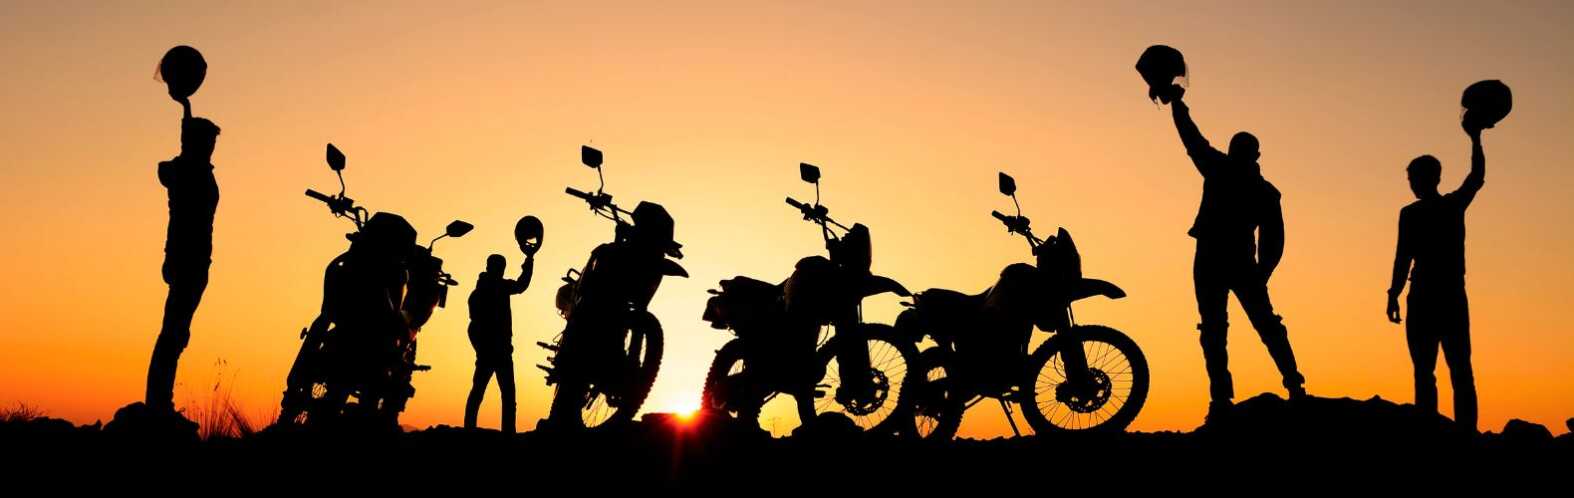 motorcycle team